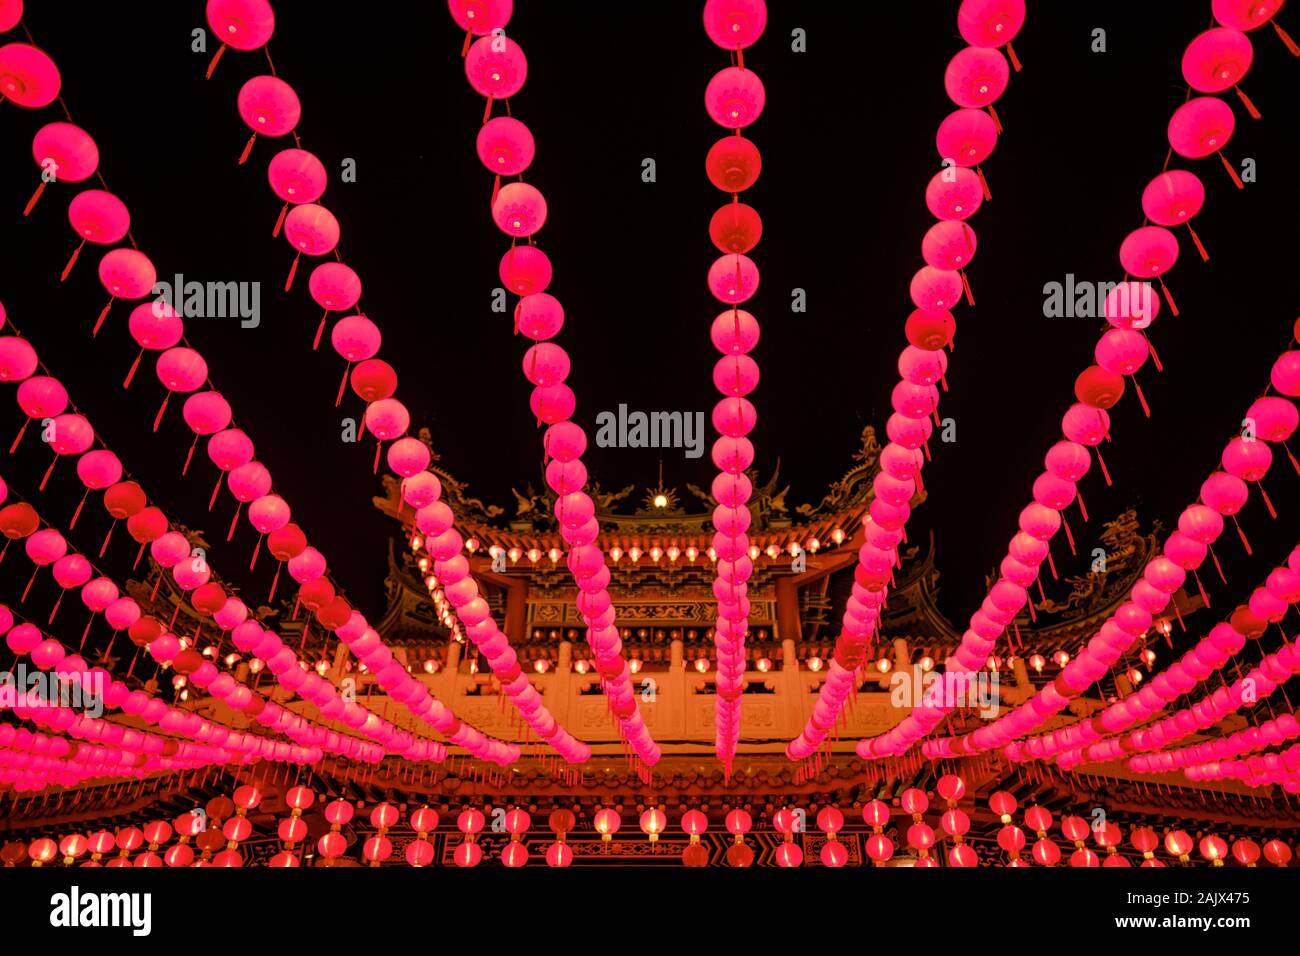 Lanternes rouges suspendus dans des lignes pendant le Nouvel An lunaire chinois dans la nuit à Thean Hou Temple, Kuala Lumpur, Malaisie Banque D'Images